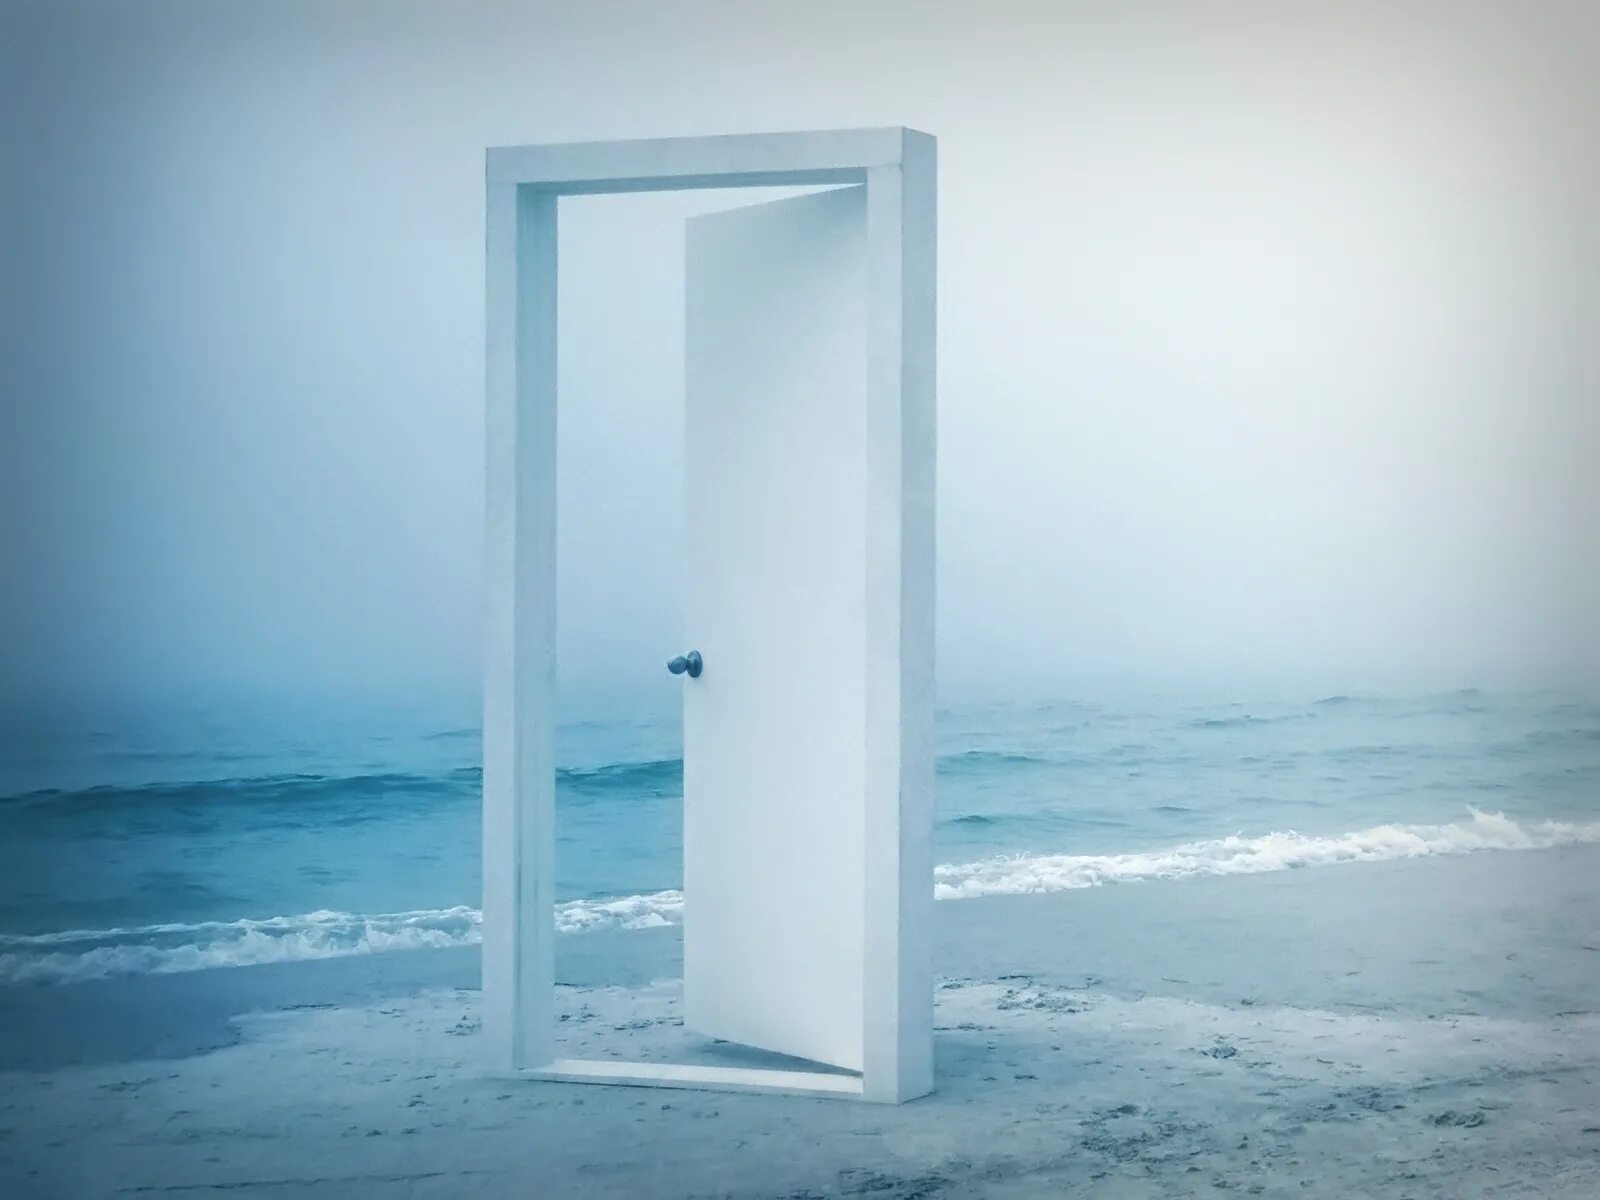 Дверь открылась как будто. Открытая дверь. Дверь открывается. Приоткрытая дверь. Дверь в море.